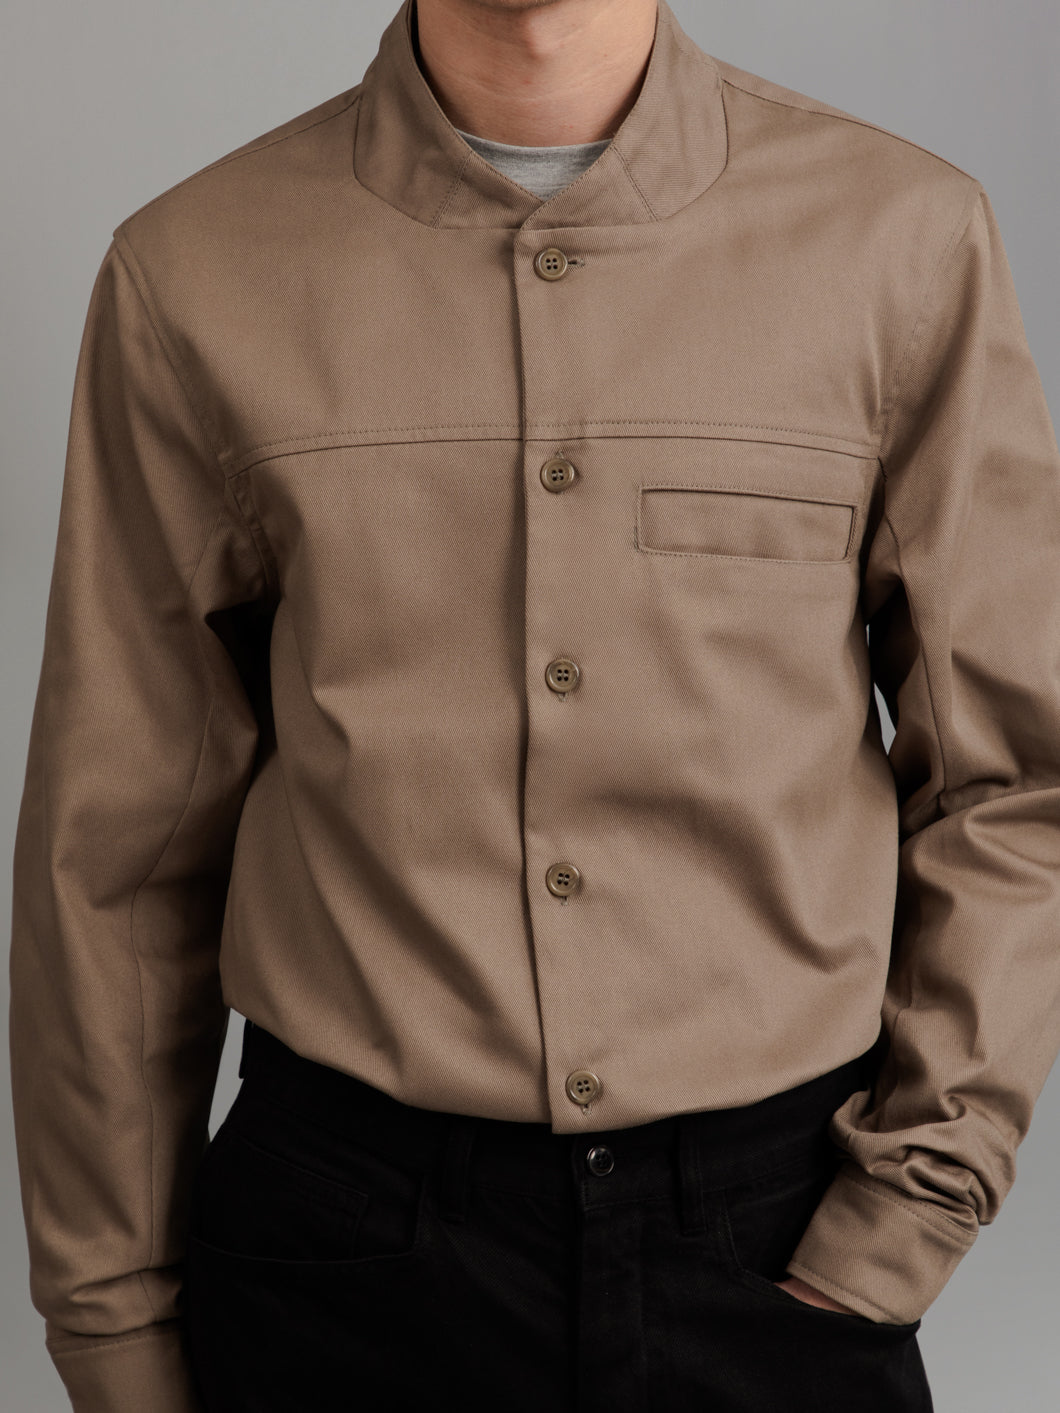 Murano Collar Overshirt in Khaki Cotton Gabardine